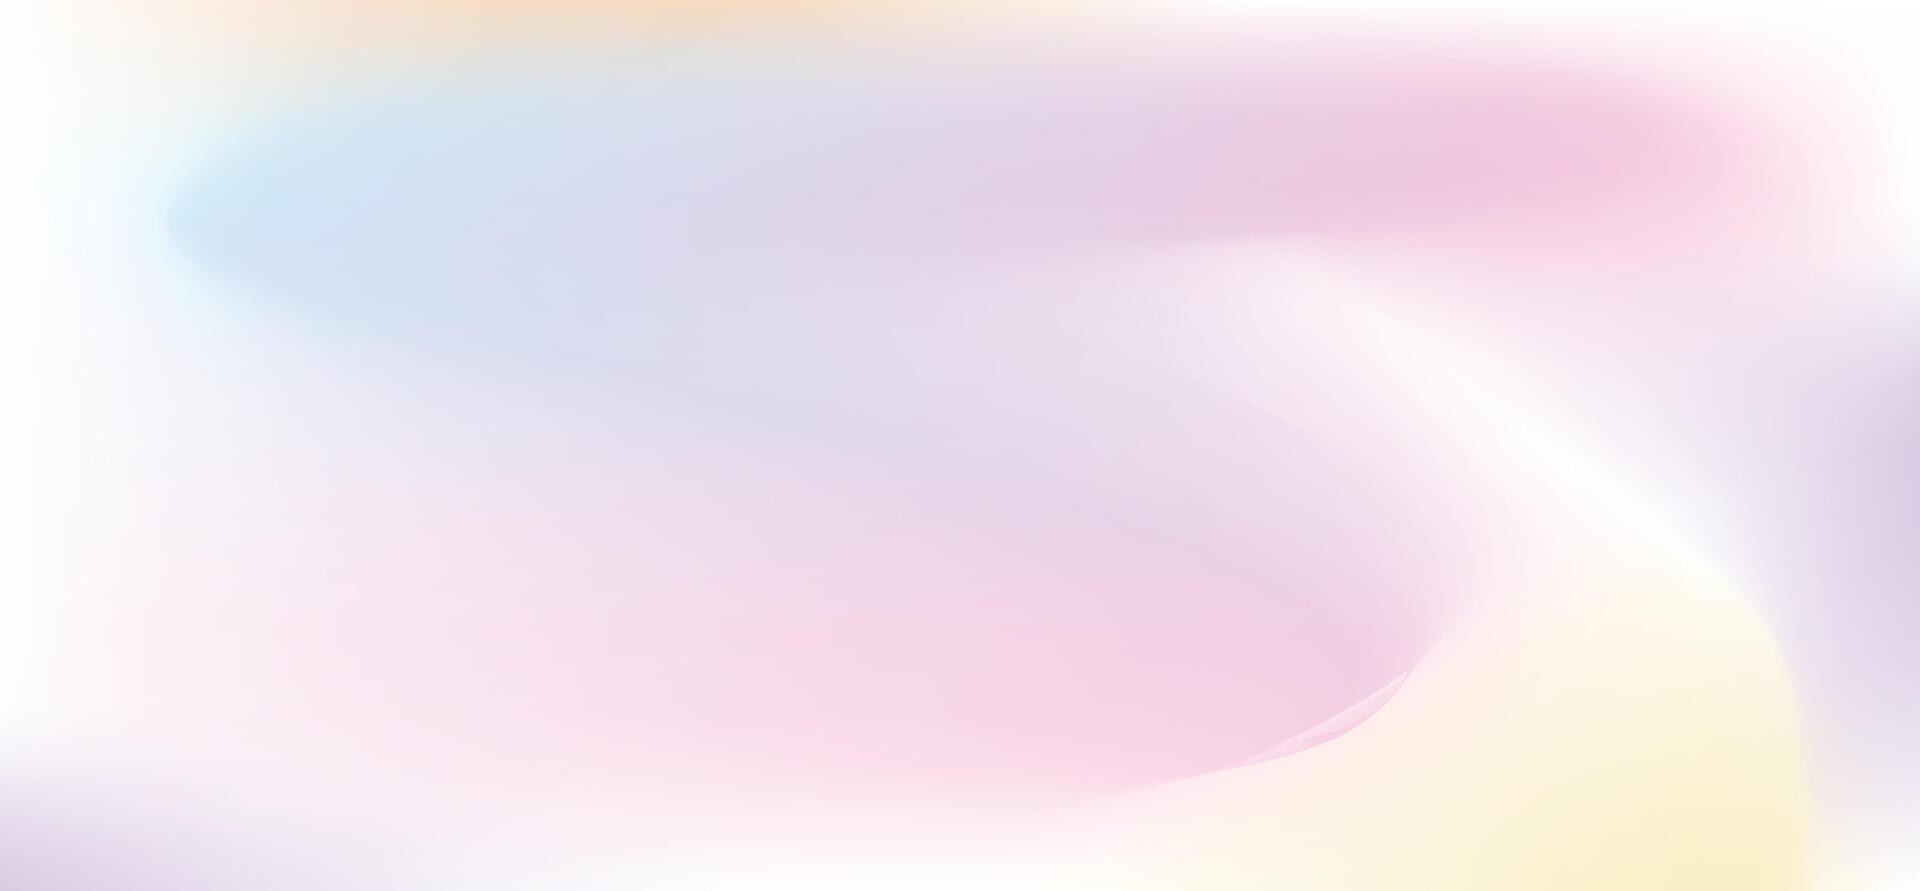 lutning pastell bakgrund, abstrakt himmel bakgrund i ljuv Färg. vektor